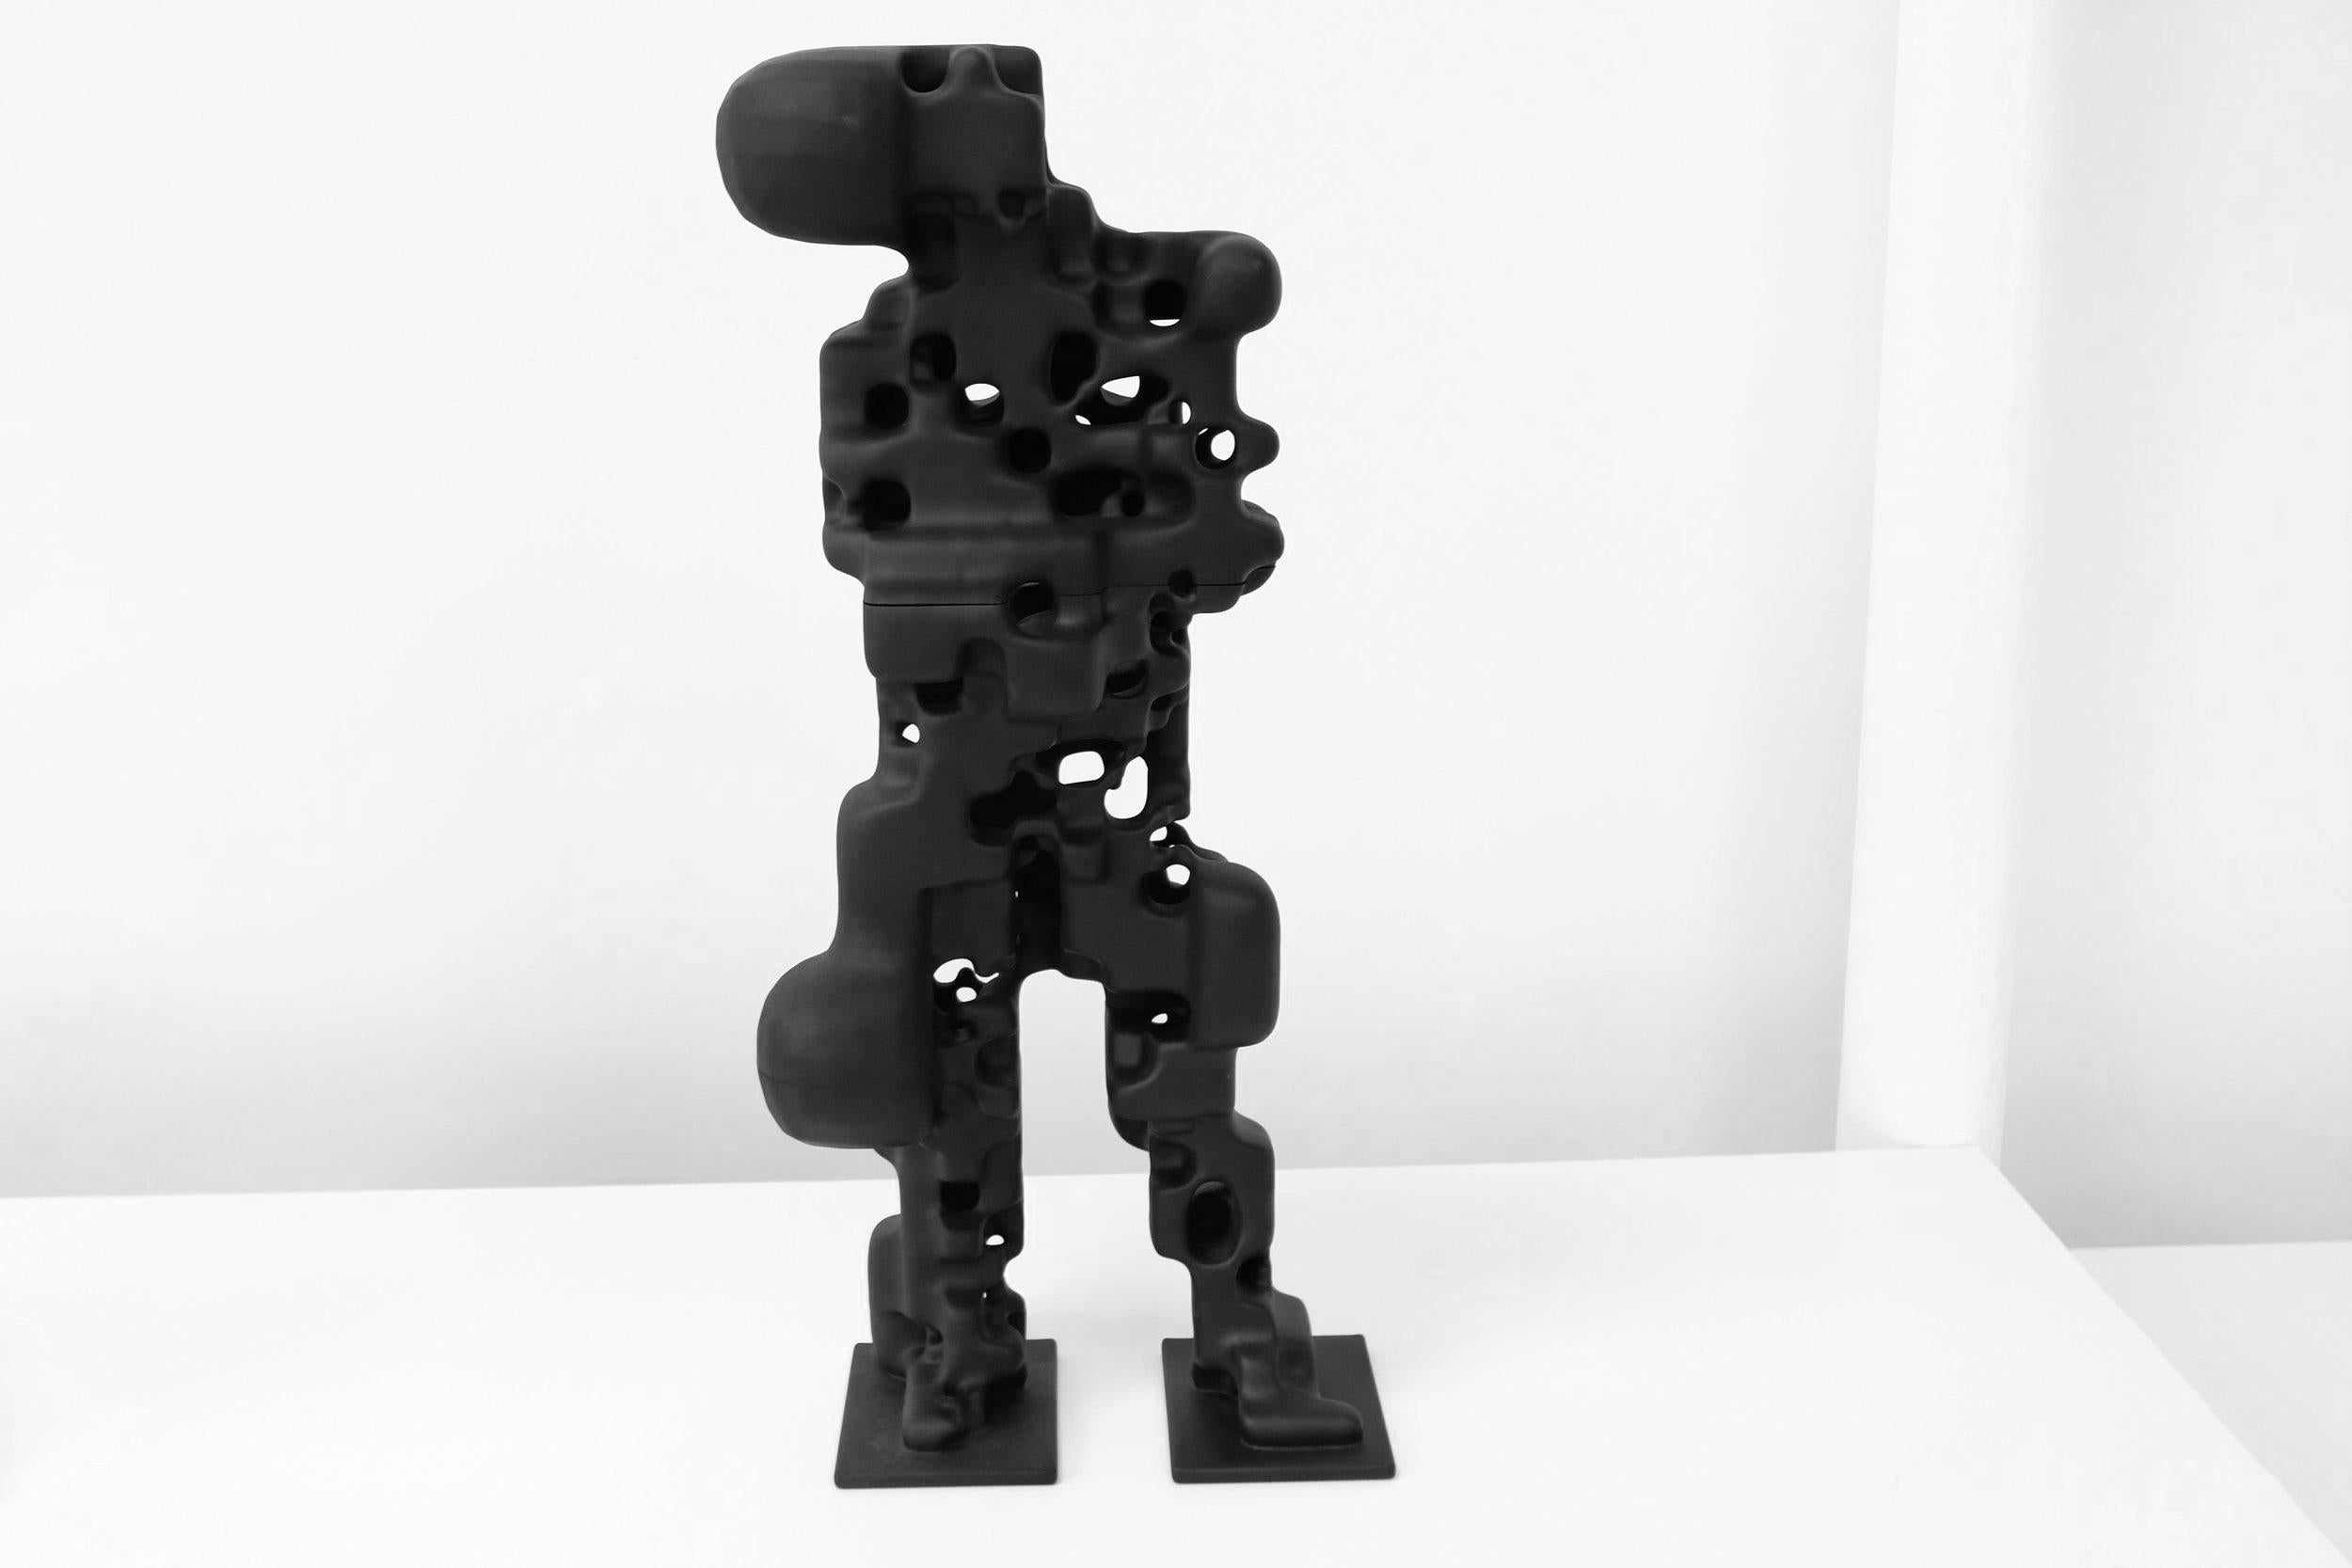 Diese humanoide Skulptur wurde zunächst digital erstellt, indem ein stehendes menschliches Subjekt mit Hilfe der Photogrammetrie in 3D-Cans aufgenommen und der Scan dann durch generative Algorithmen geleitet wurde. Anschließend wurde sie mit